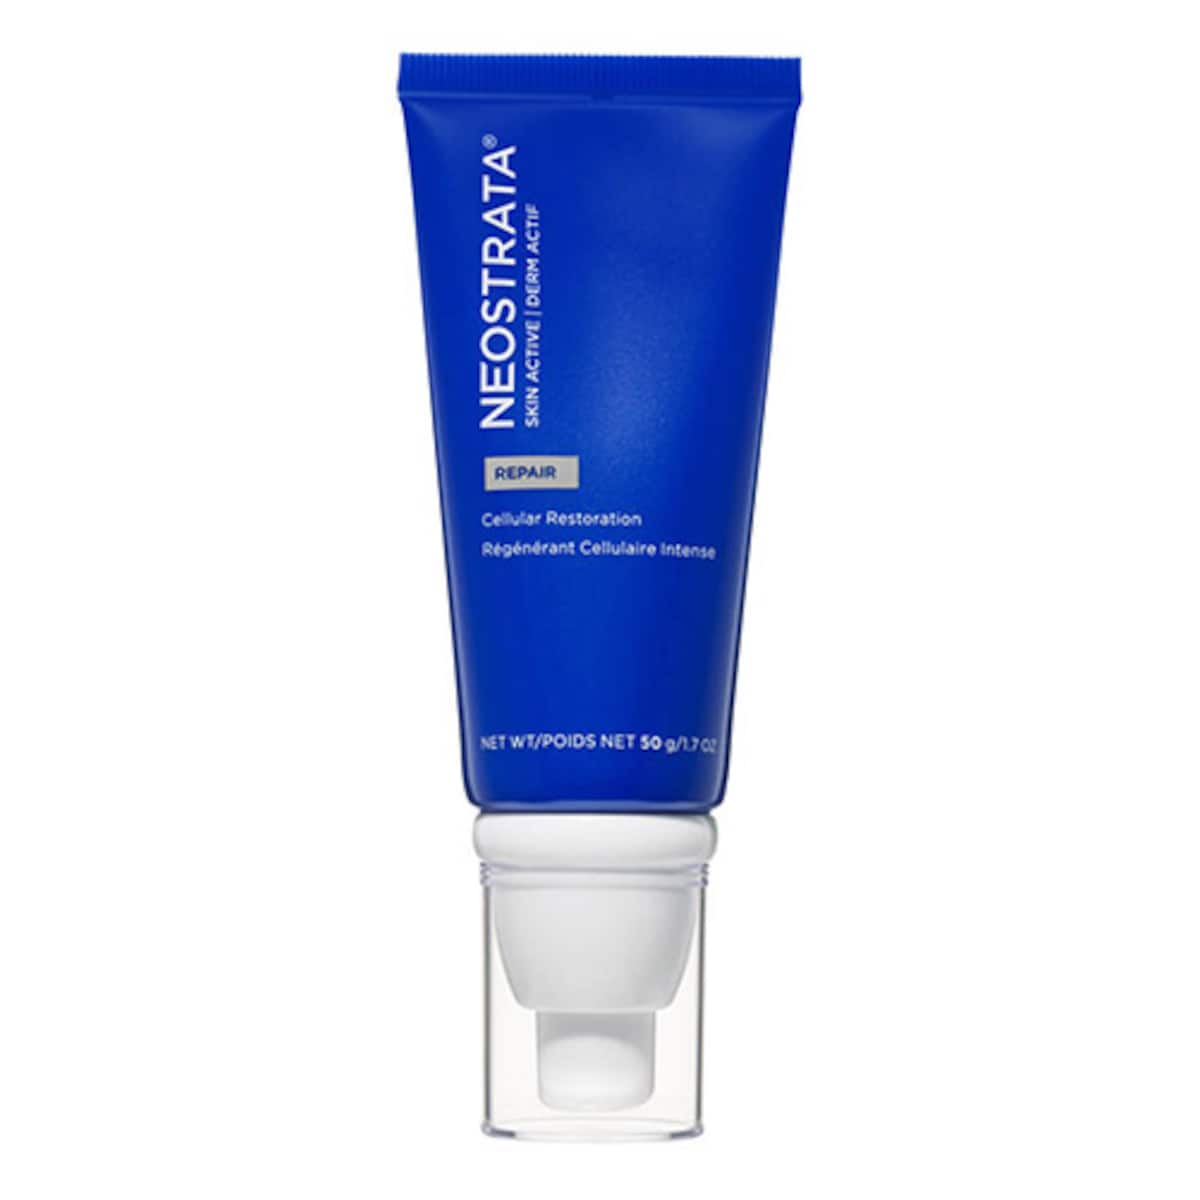 Neostrata Skin Active Repair Cellular Restoration Cream 50g